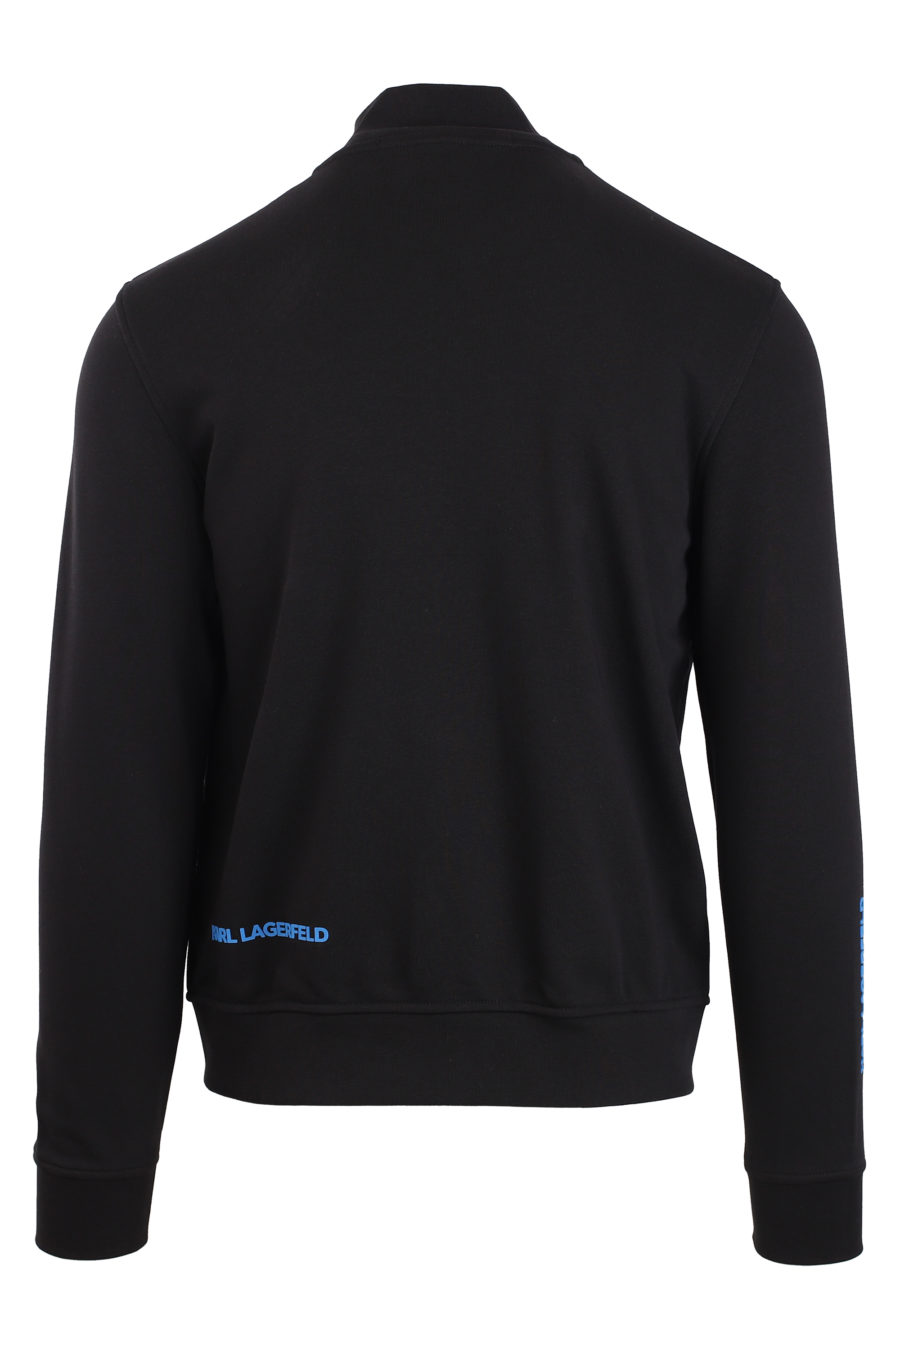 Schwarze Jacke mit kleinem blauen Logo - IMG 0901